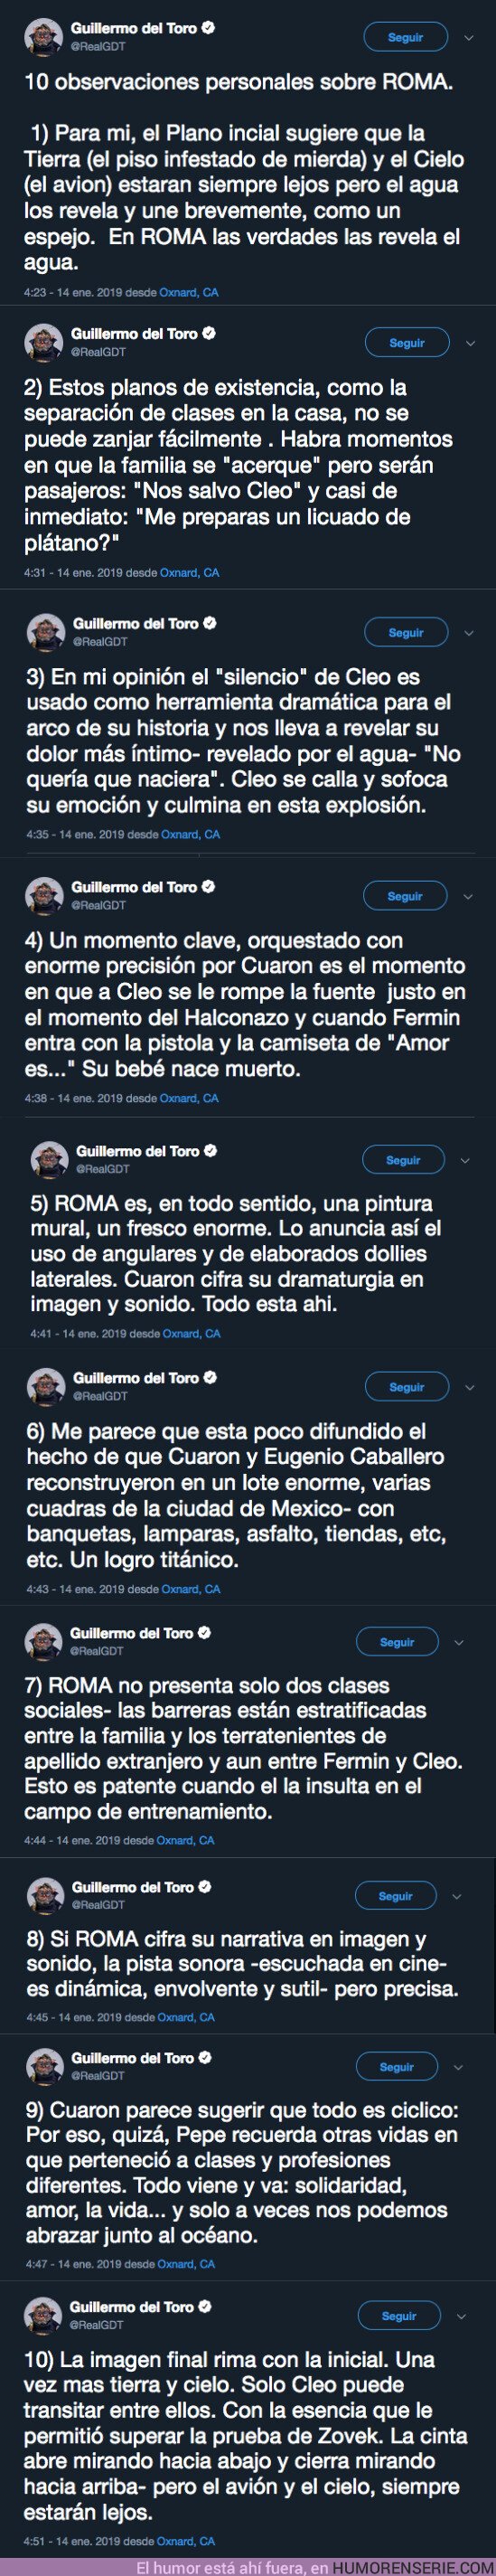 33766 - Guillermo del Toro te hará ver la peli de ROMA de forma distinta gracias a estos 10 tuits